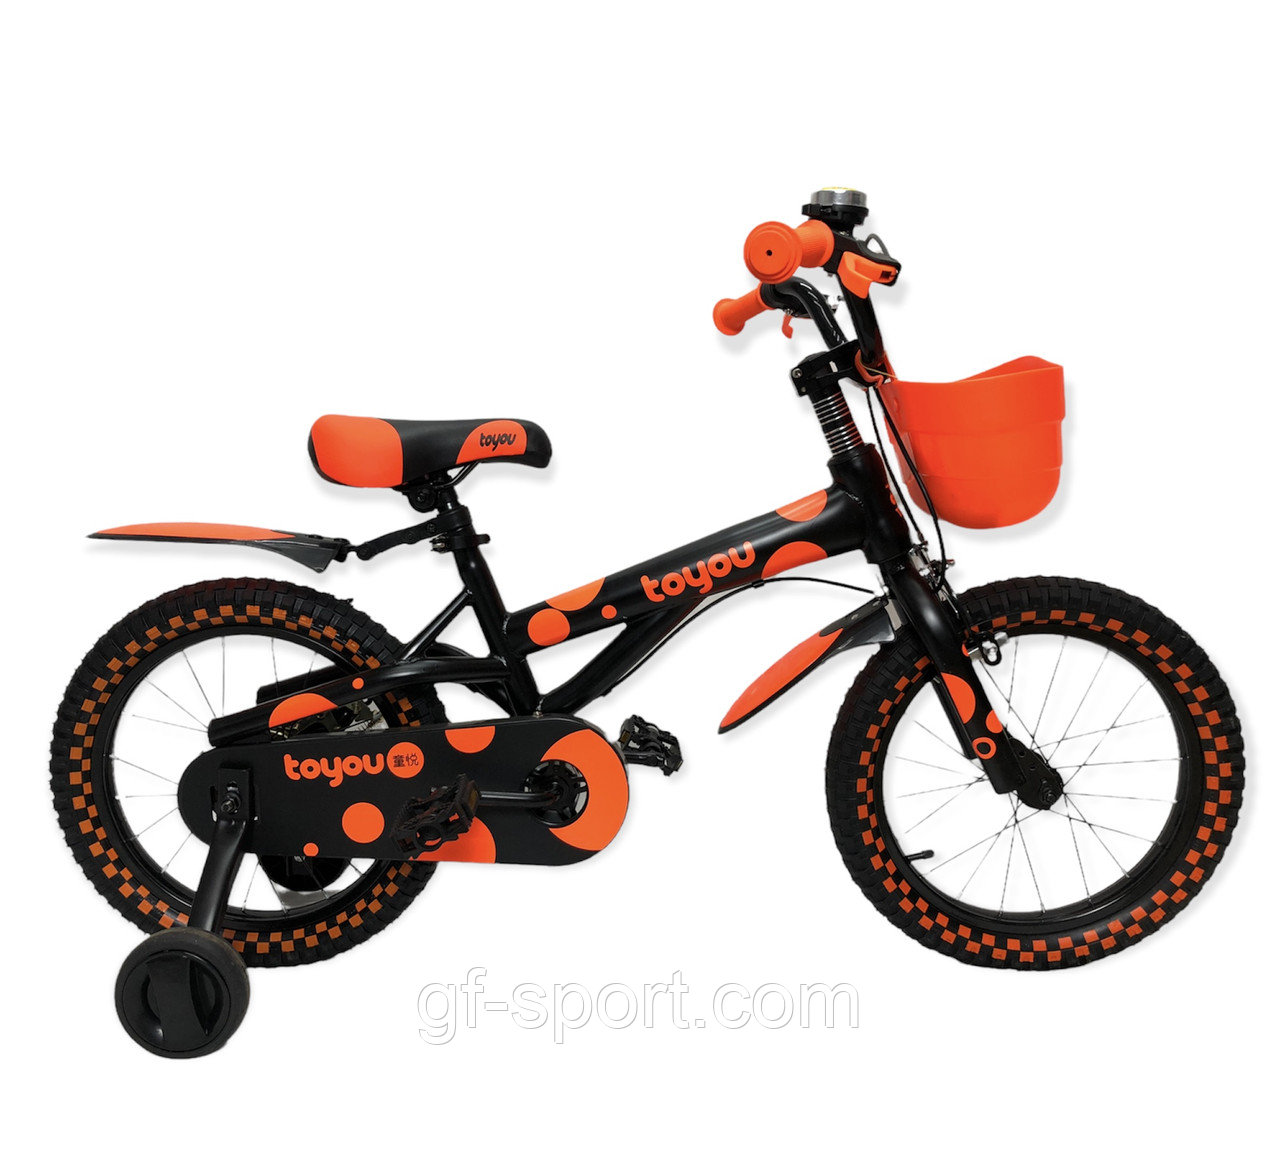 Велосипед ToYou оранжевый оригинал детский с холостым ходом,16 размер (530-16)